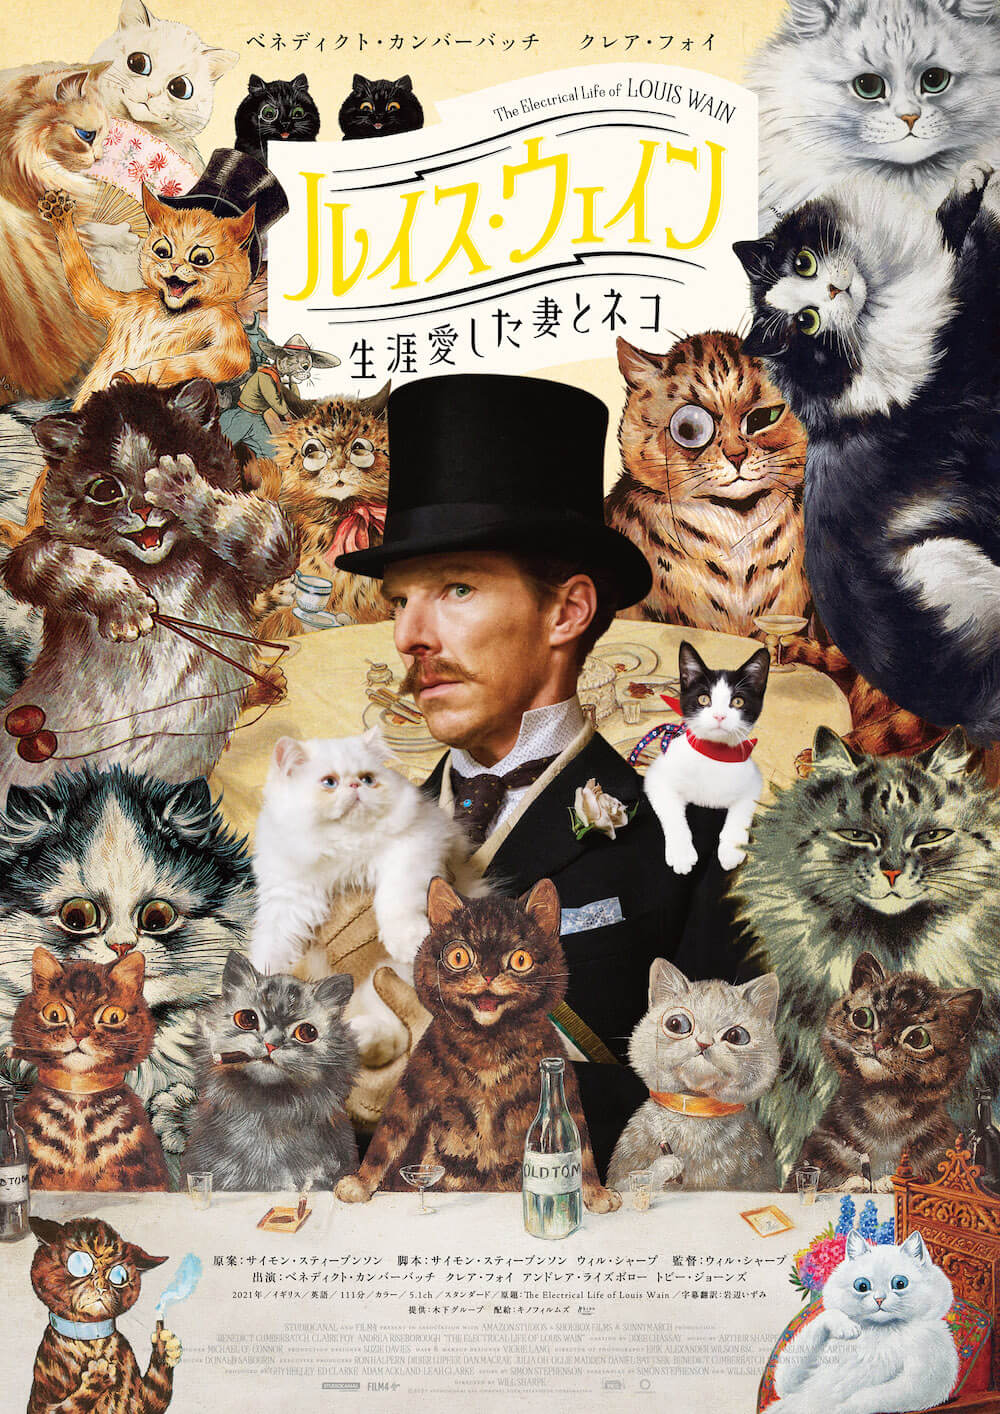 擬人化された猫に囲まれるルイス・ウェイン by 映画『ルイス・ウェイン 生涯愛した妻とネコ』のポスタービジュアル